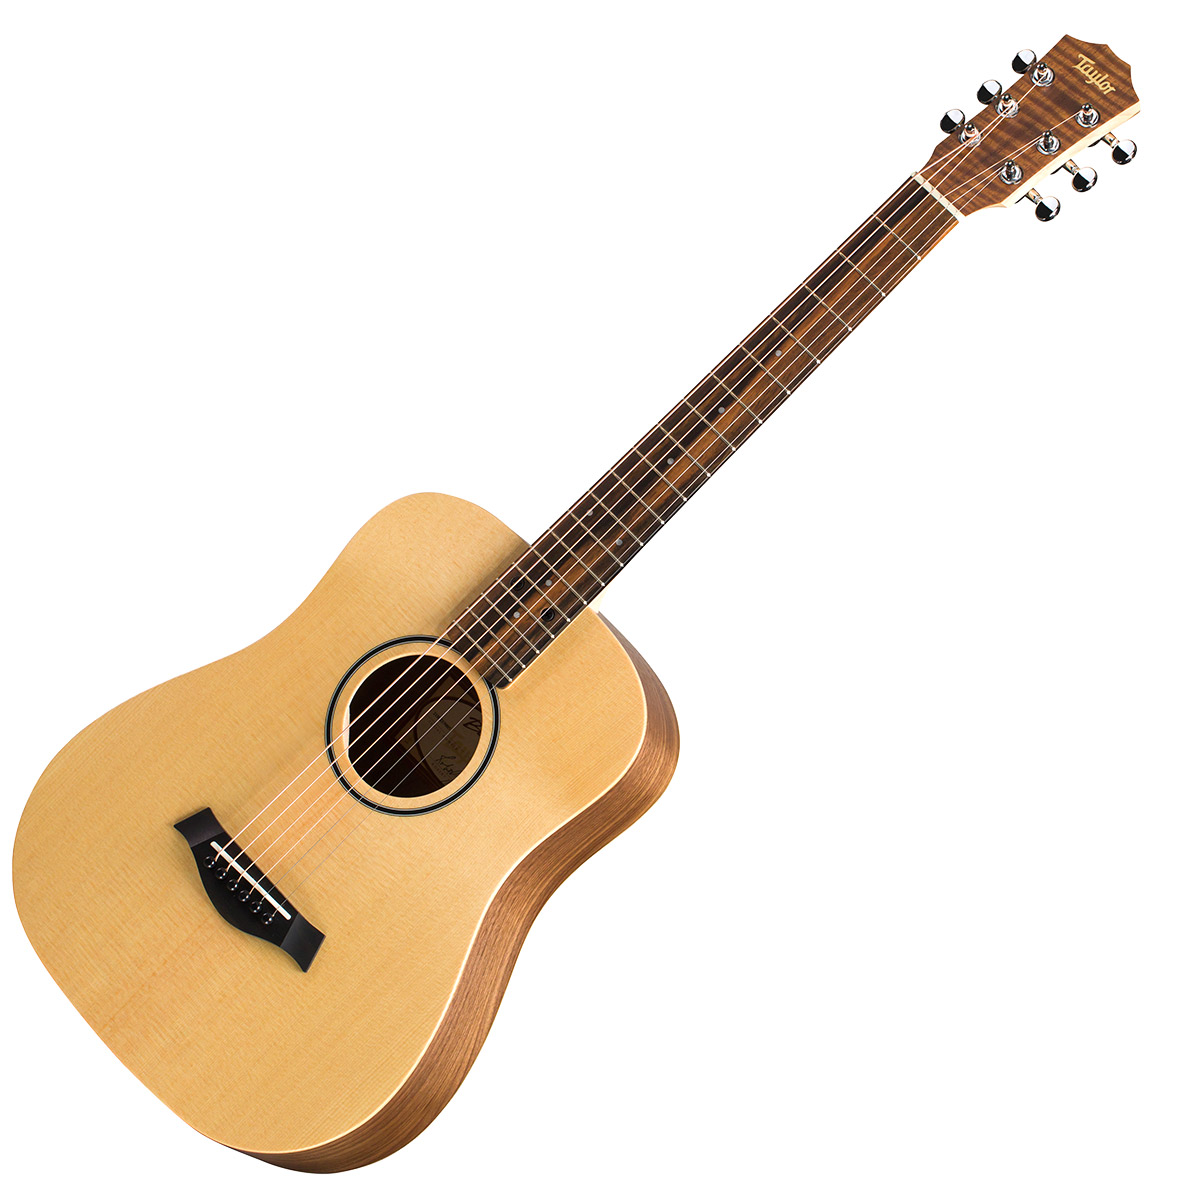 商談中) Taylor / Baby. 2/3ミニギター ケース付 - 弦楽器、ギター